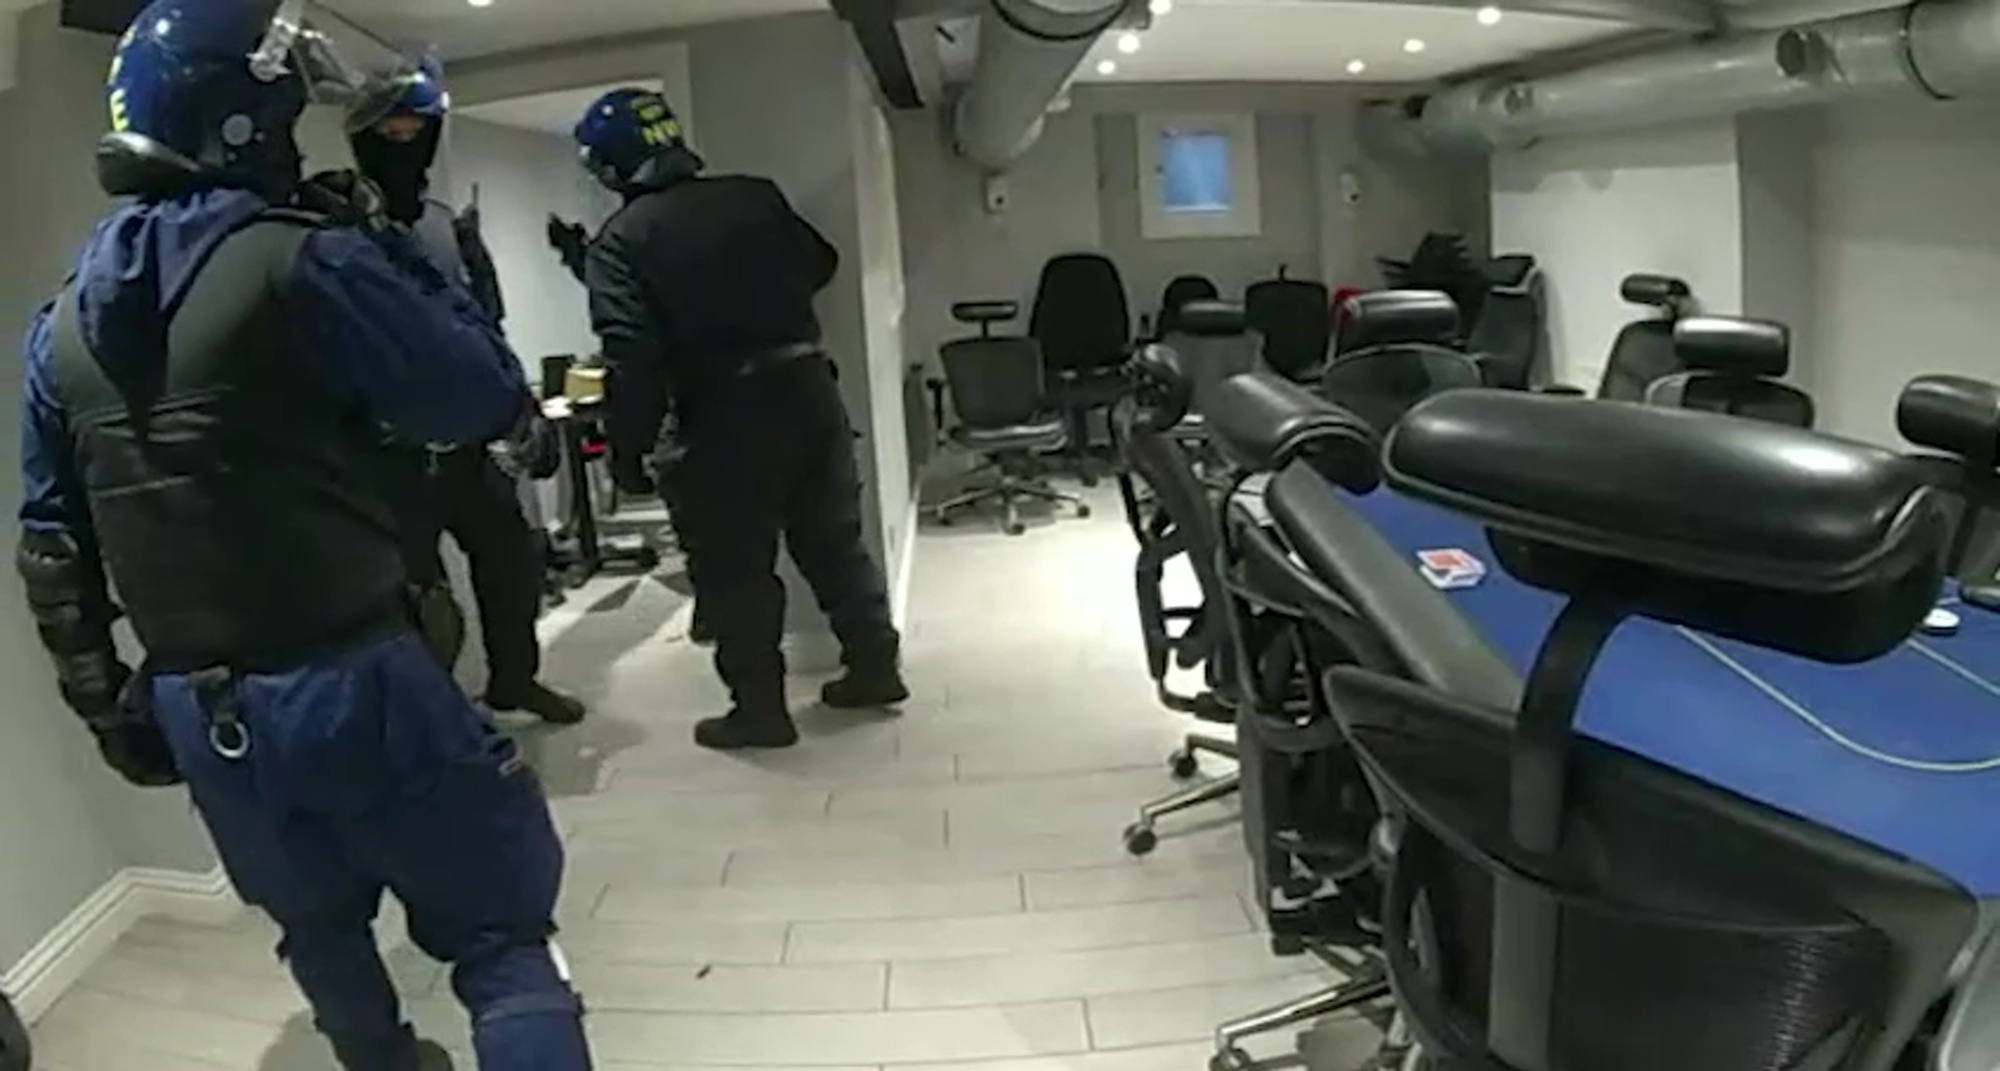 Polizisten sprengen ein illegales Casino, während der Friseurladen durchsucht wird